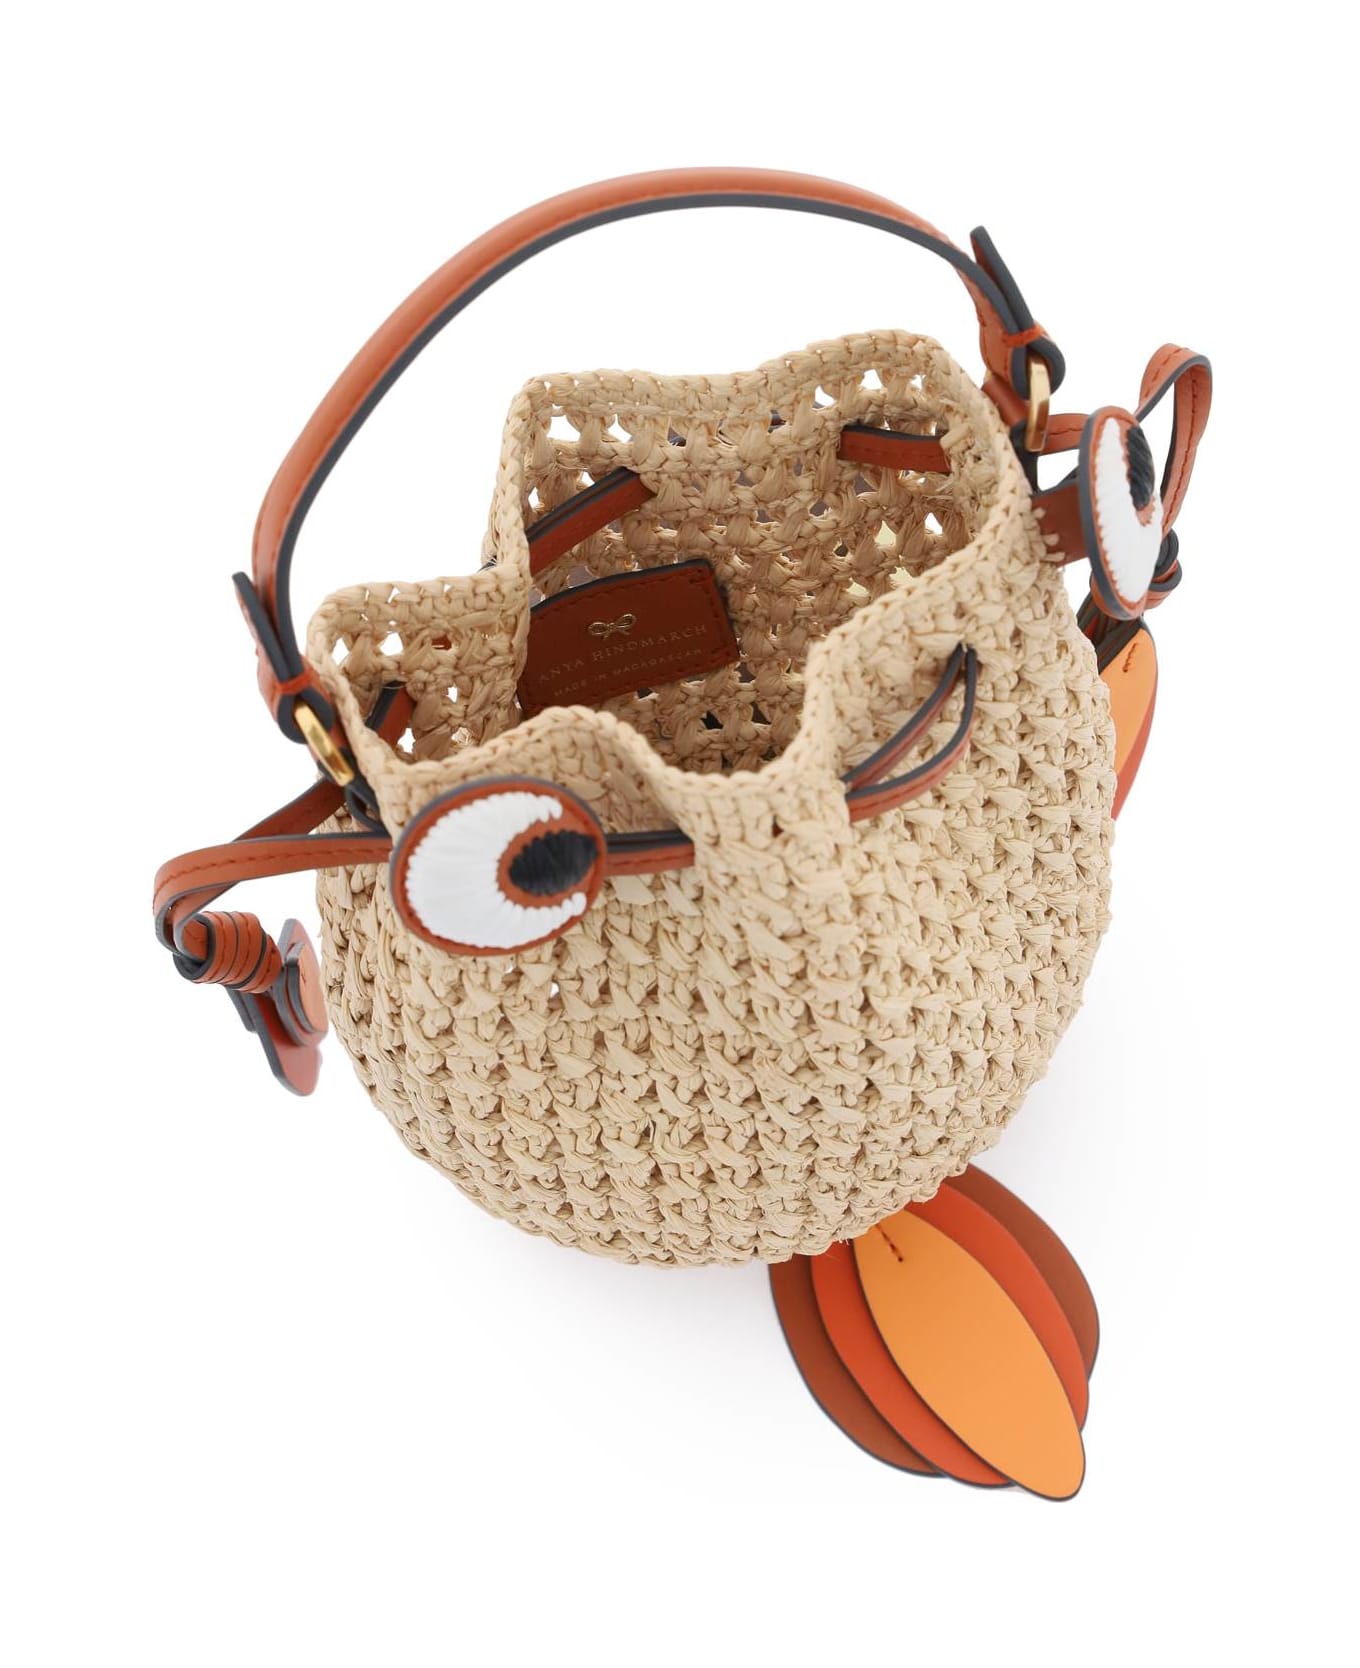 Anya Hindmarch Raffia Gold Fish Handbag - NATURAL (Orange) トートバッグ